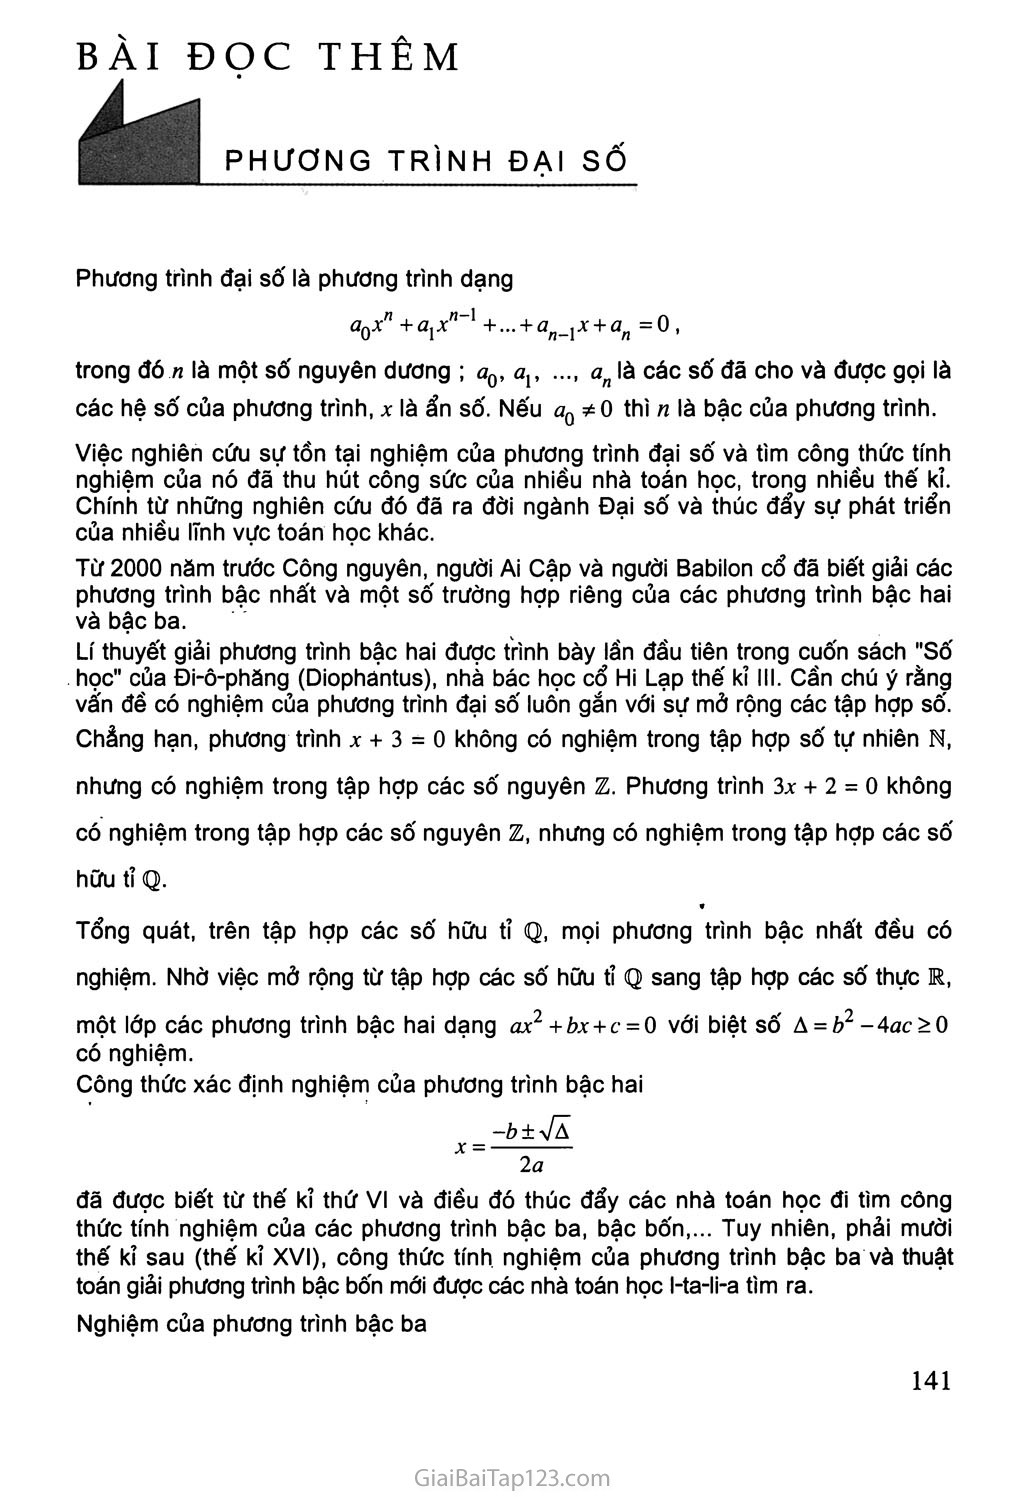 Bài 4. Phương trình bậc hai với hệ số thực - Bài đọc thêm: Phương trình đại số trang 3